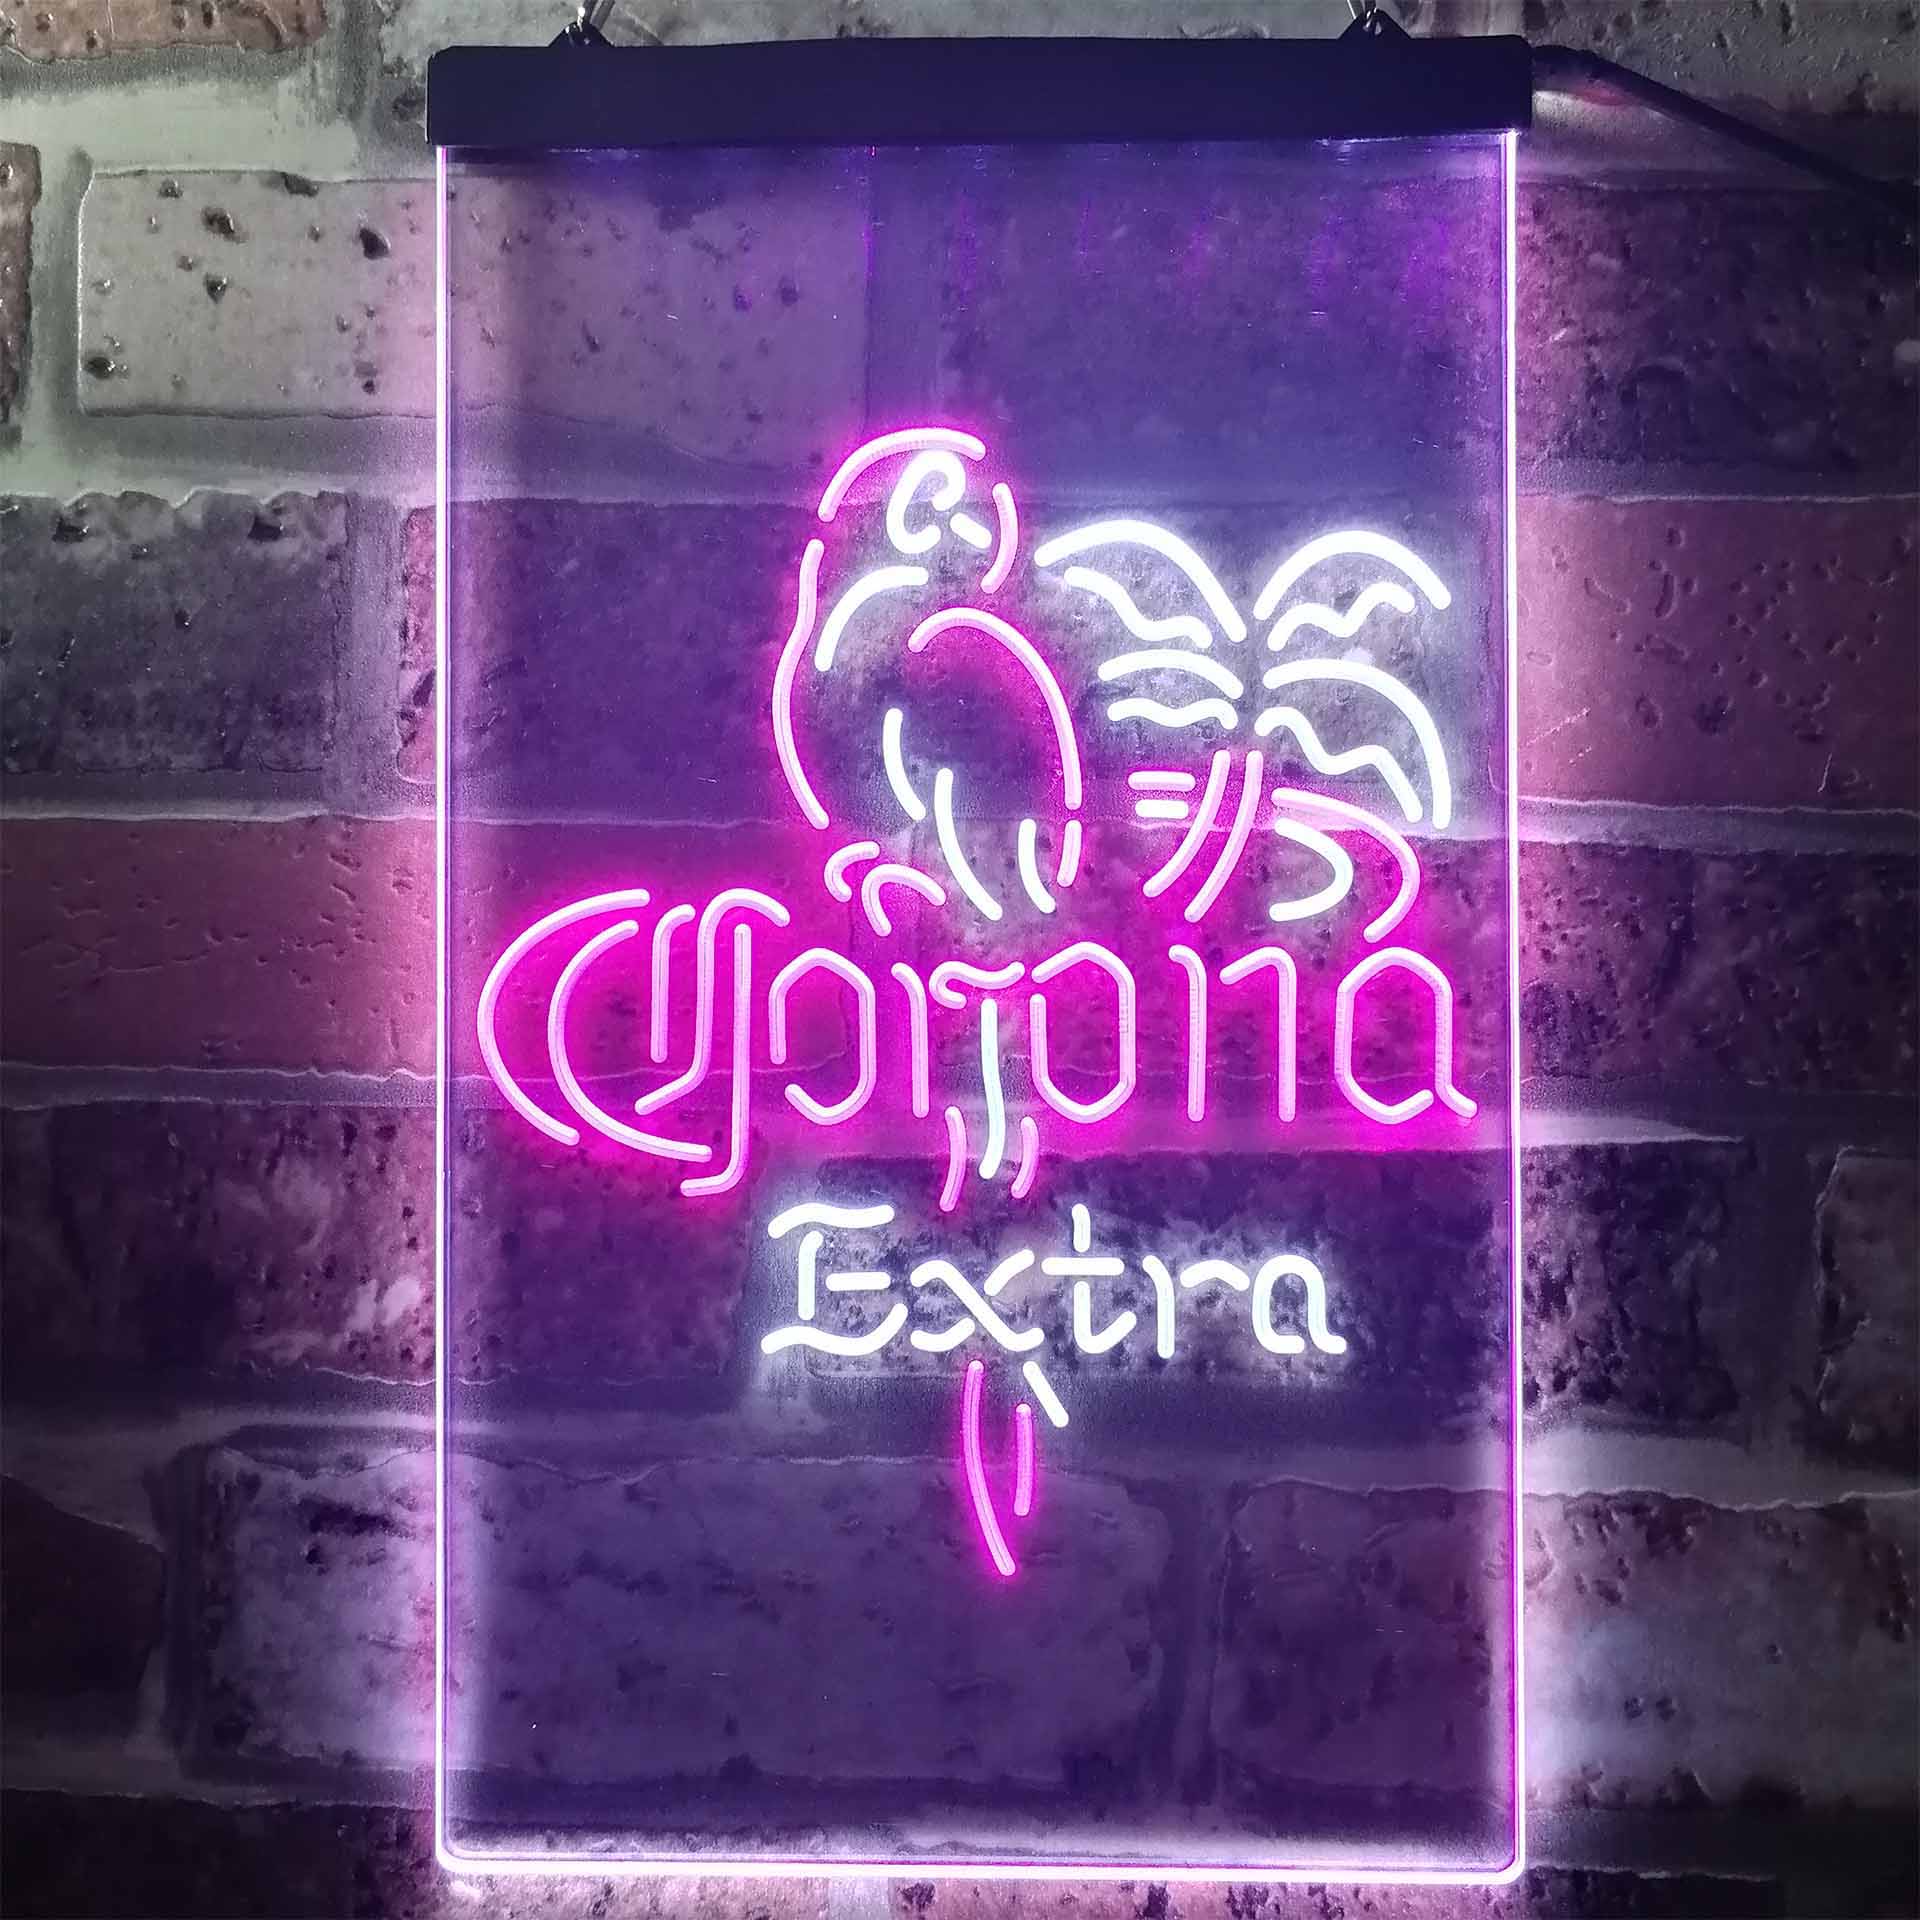 Corona Extra Parrot Bird Palm Tree LED Neon Sign